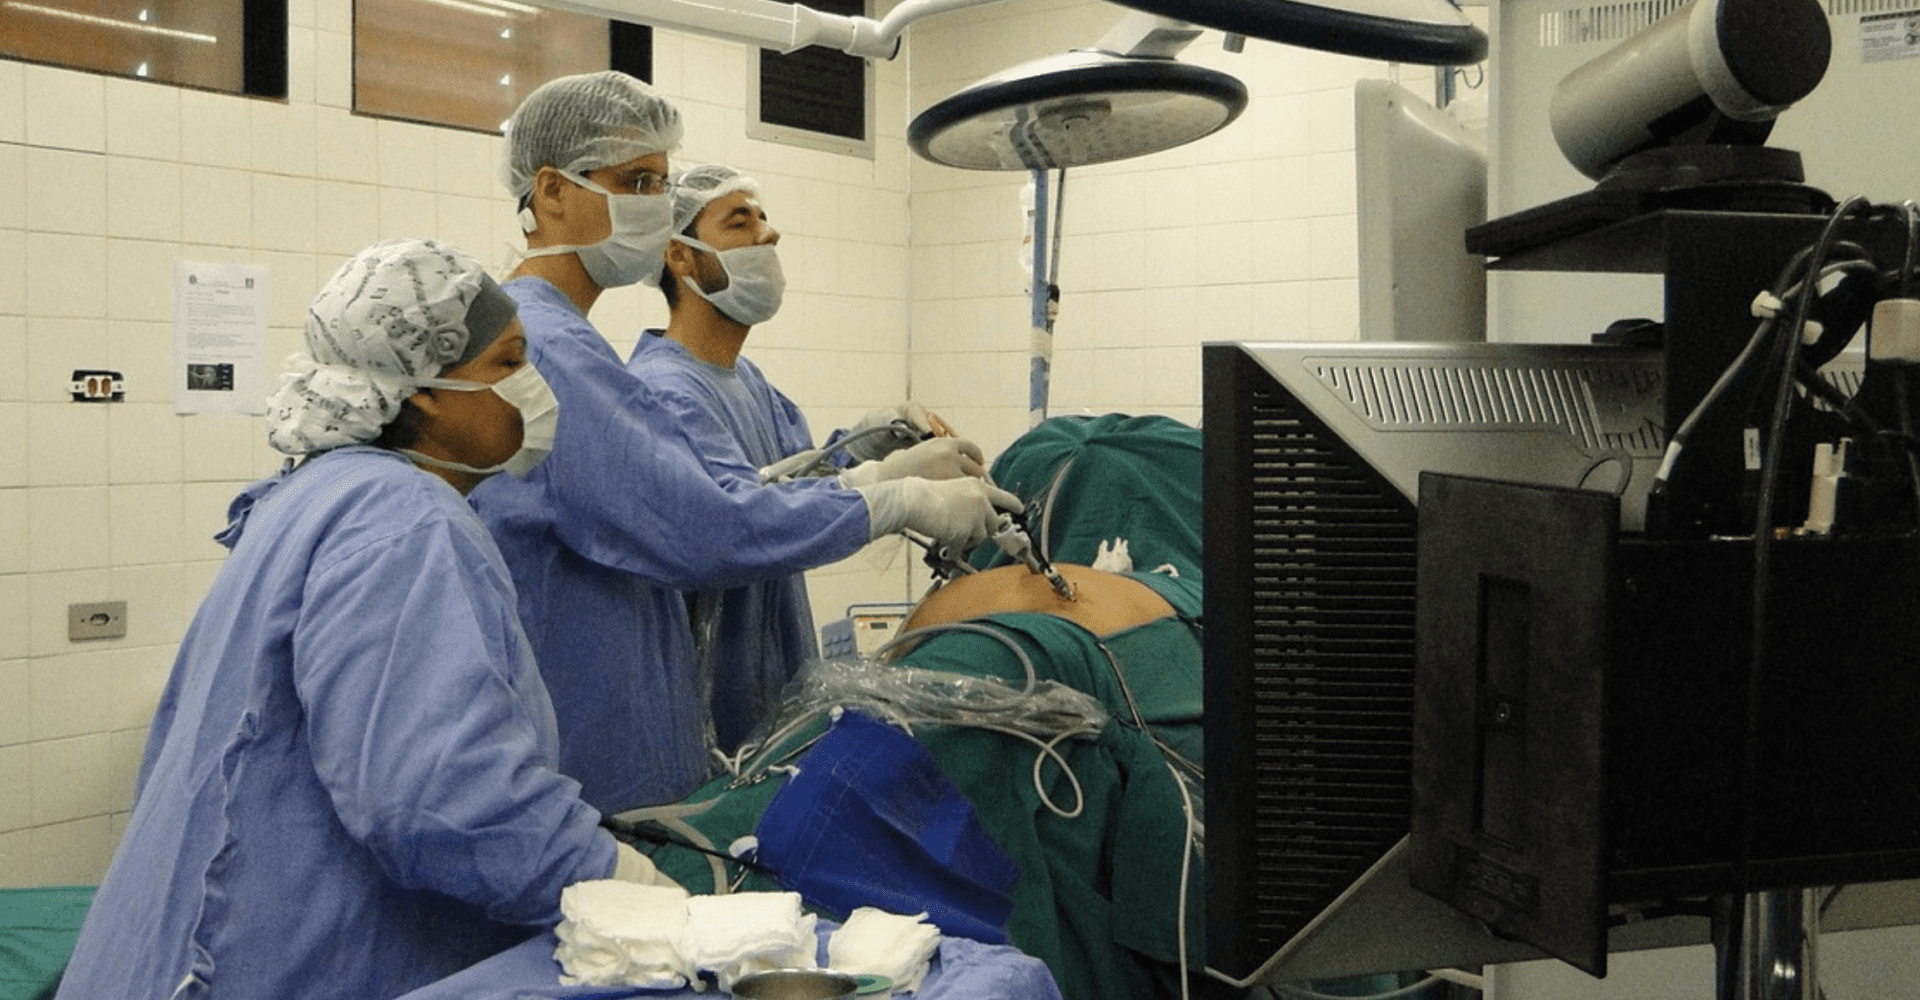 Sala operacyjna. Trzy osoby operują jedną, która leży na stole operacyjnym.